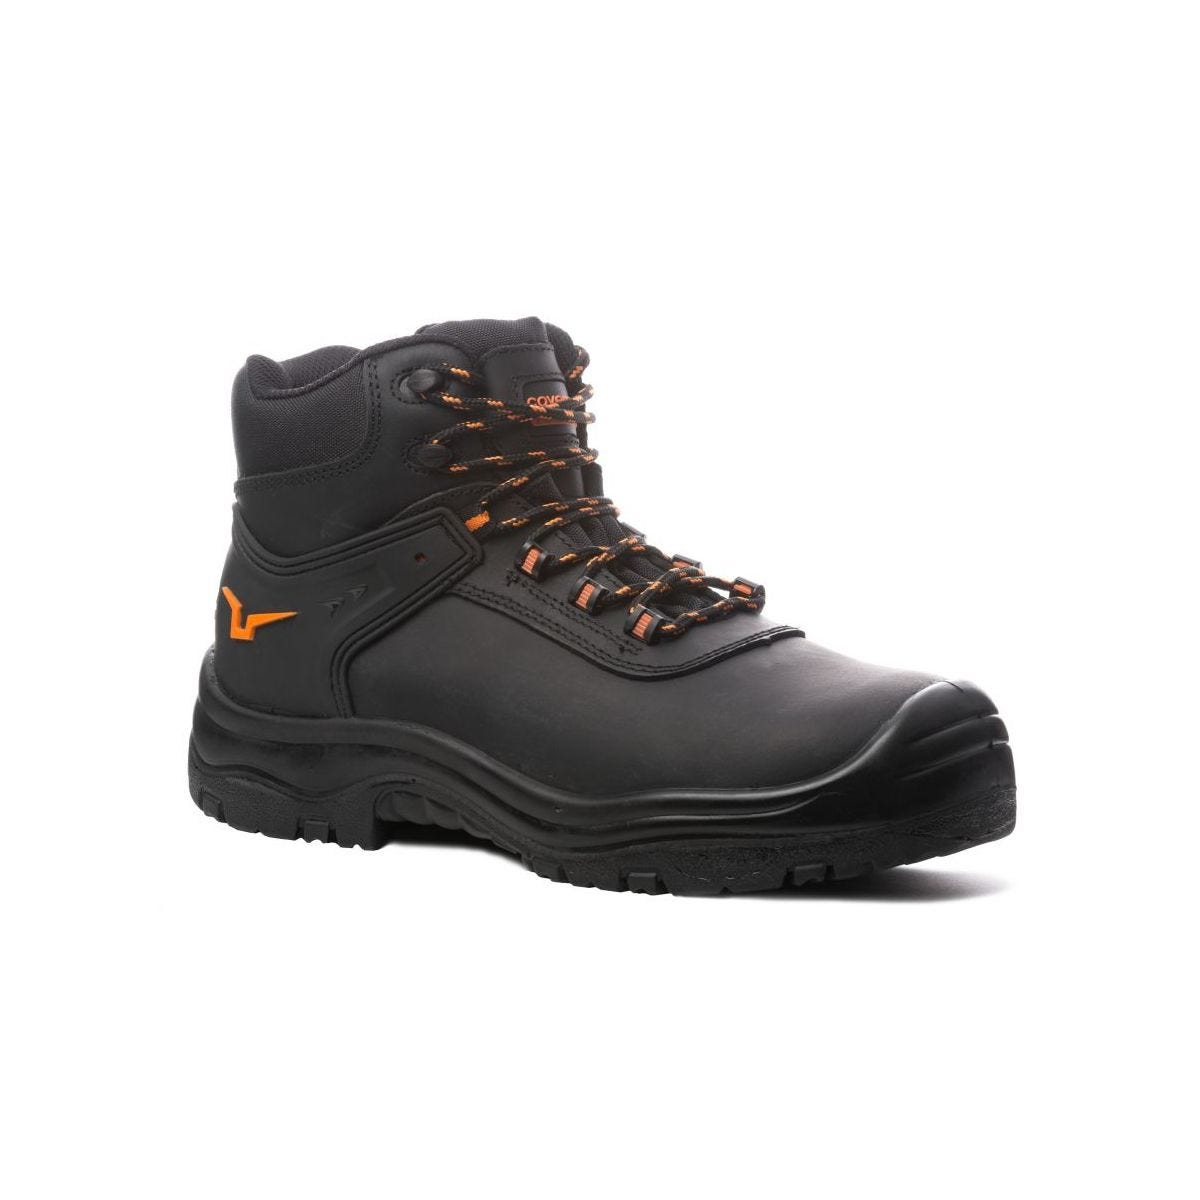 Chaussures de sécurité hautes S3 SRC OPAL composite Noir - Coverguard - Taille 45 0